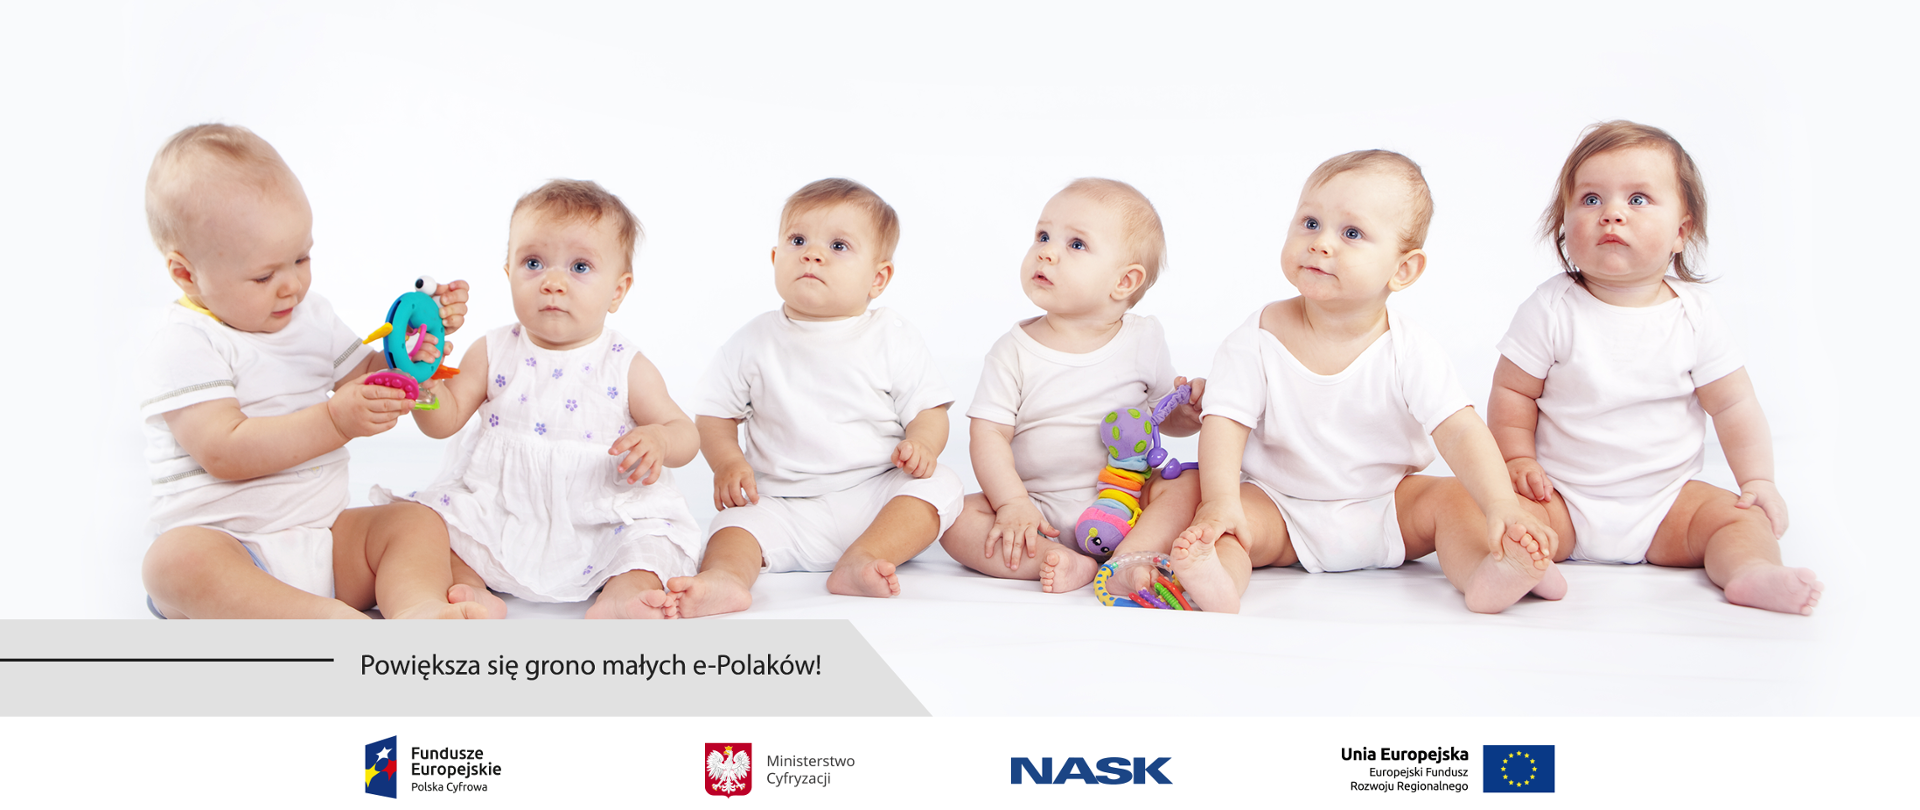 Sześcioro siedzących obok siebie niemowląt. Poniżej napis: Powiększa się grono małych e-Polaków!